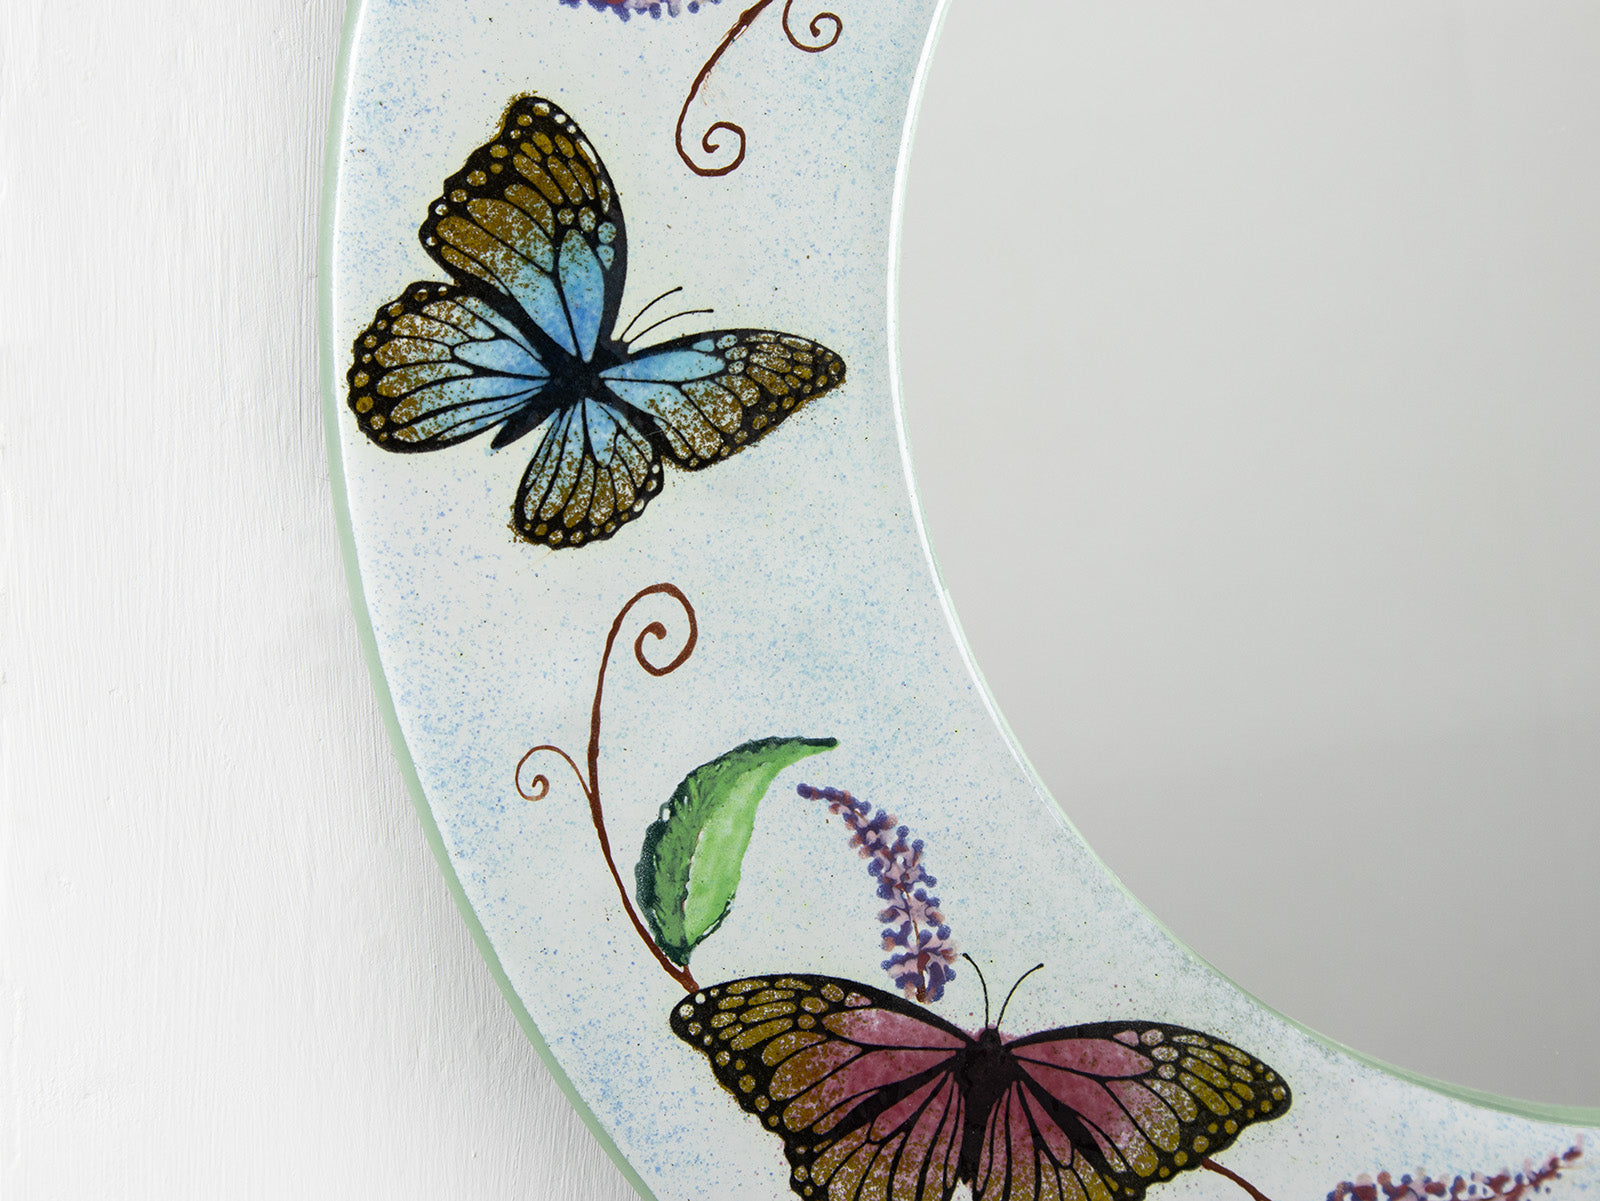 Artisan Butterflies 38cm Round Mirror